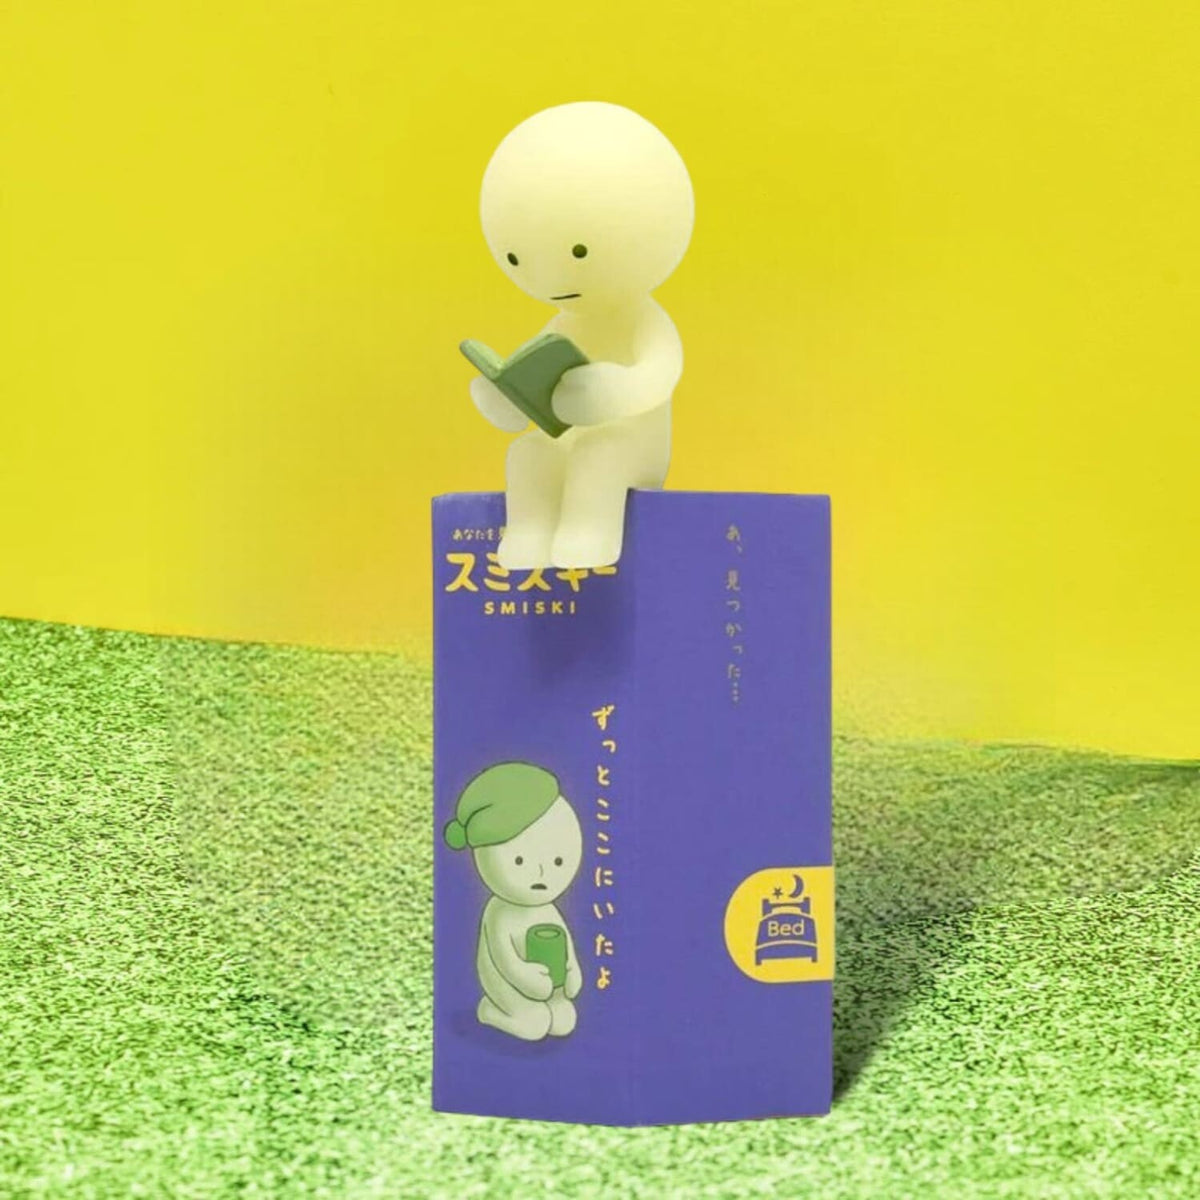 Smiski Mini Figurine - Bed Blind Box - Collectible - Kawaii